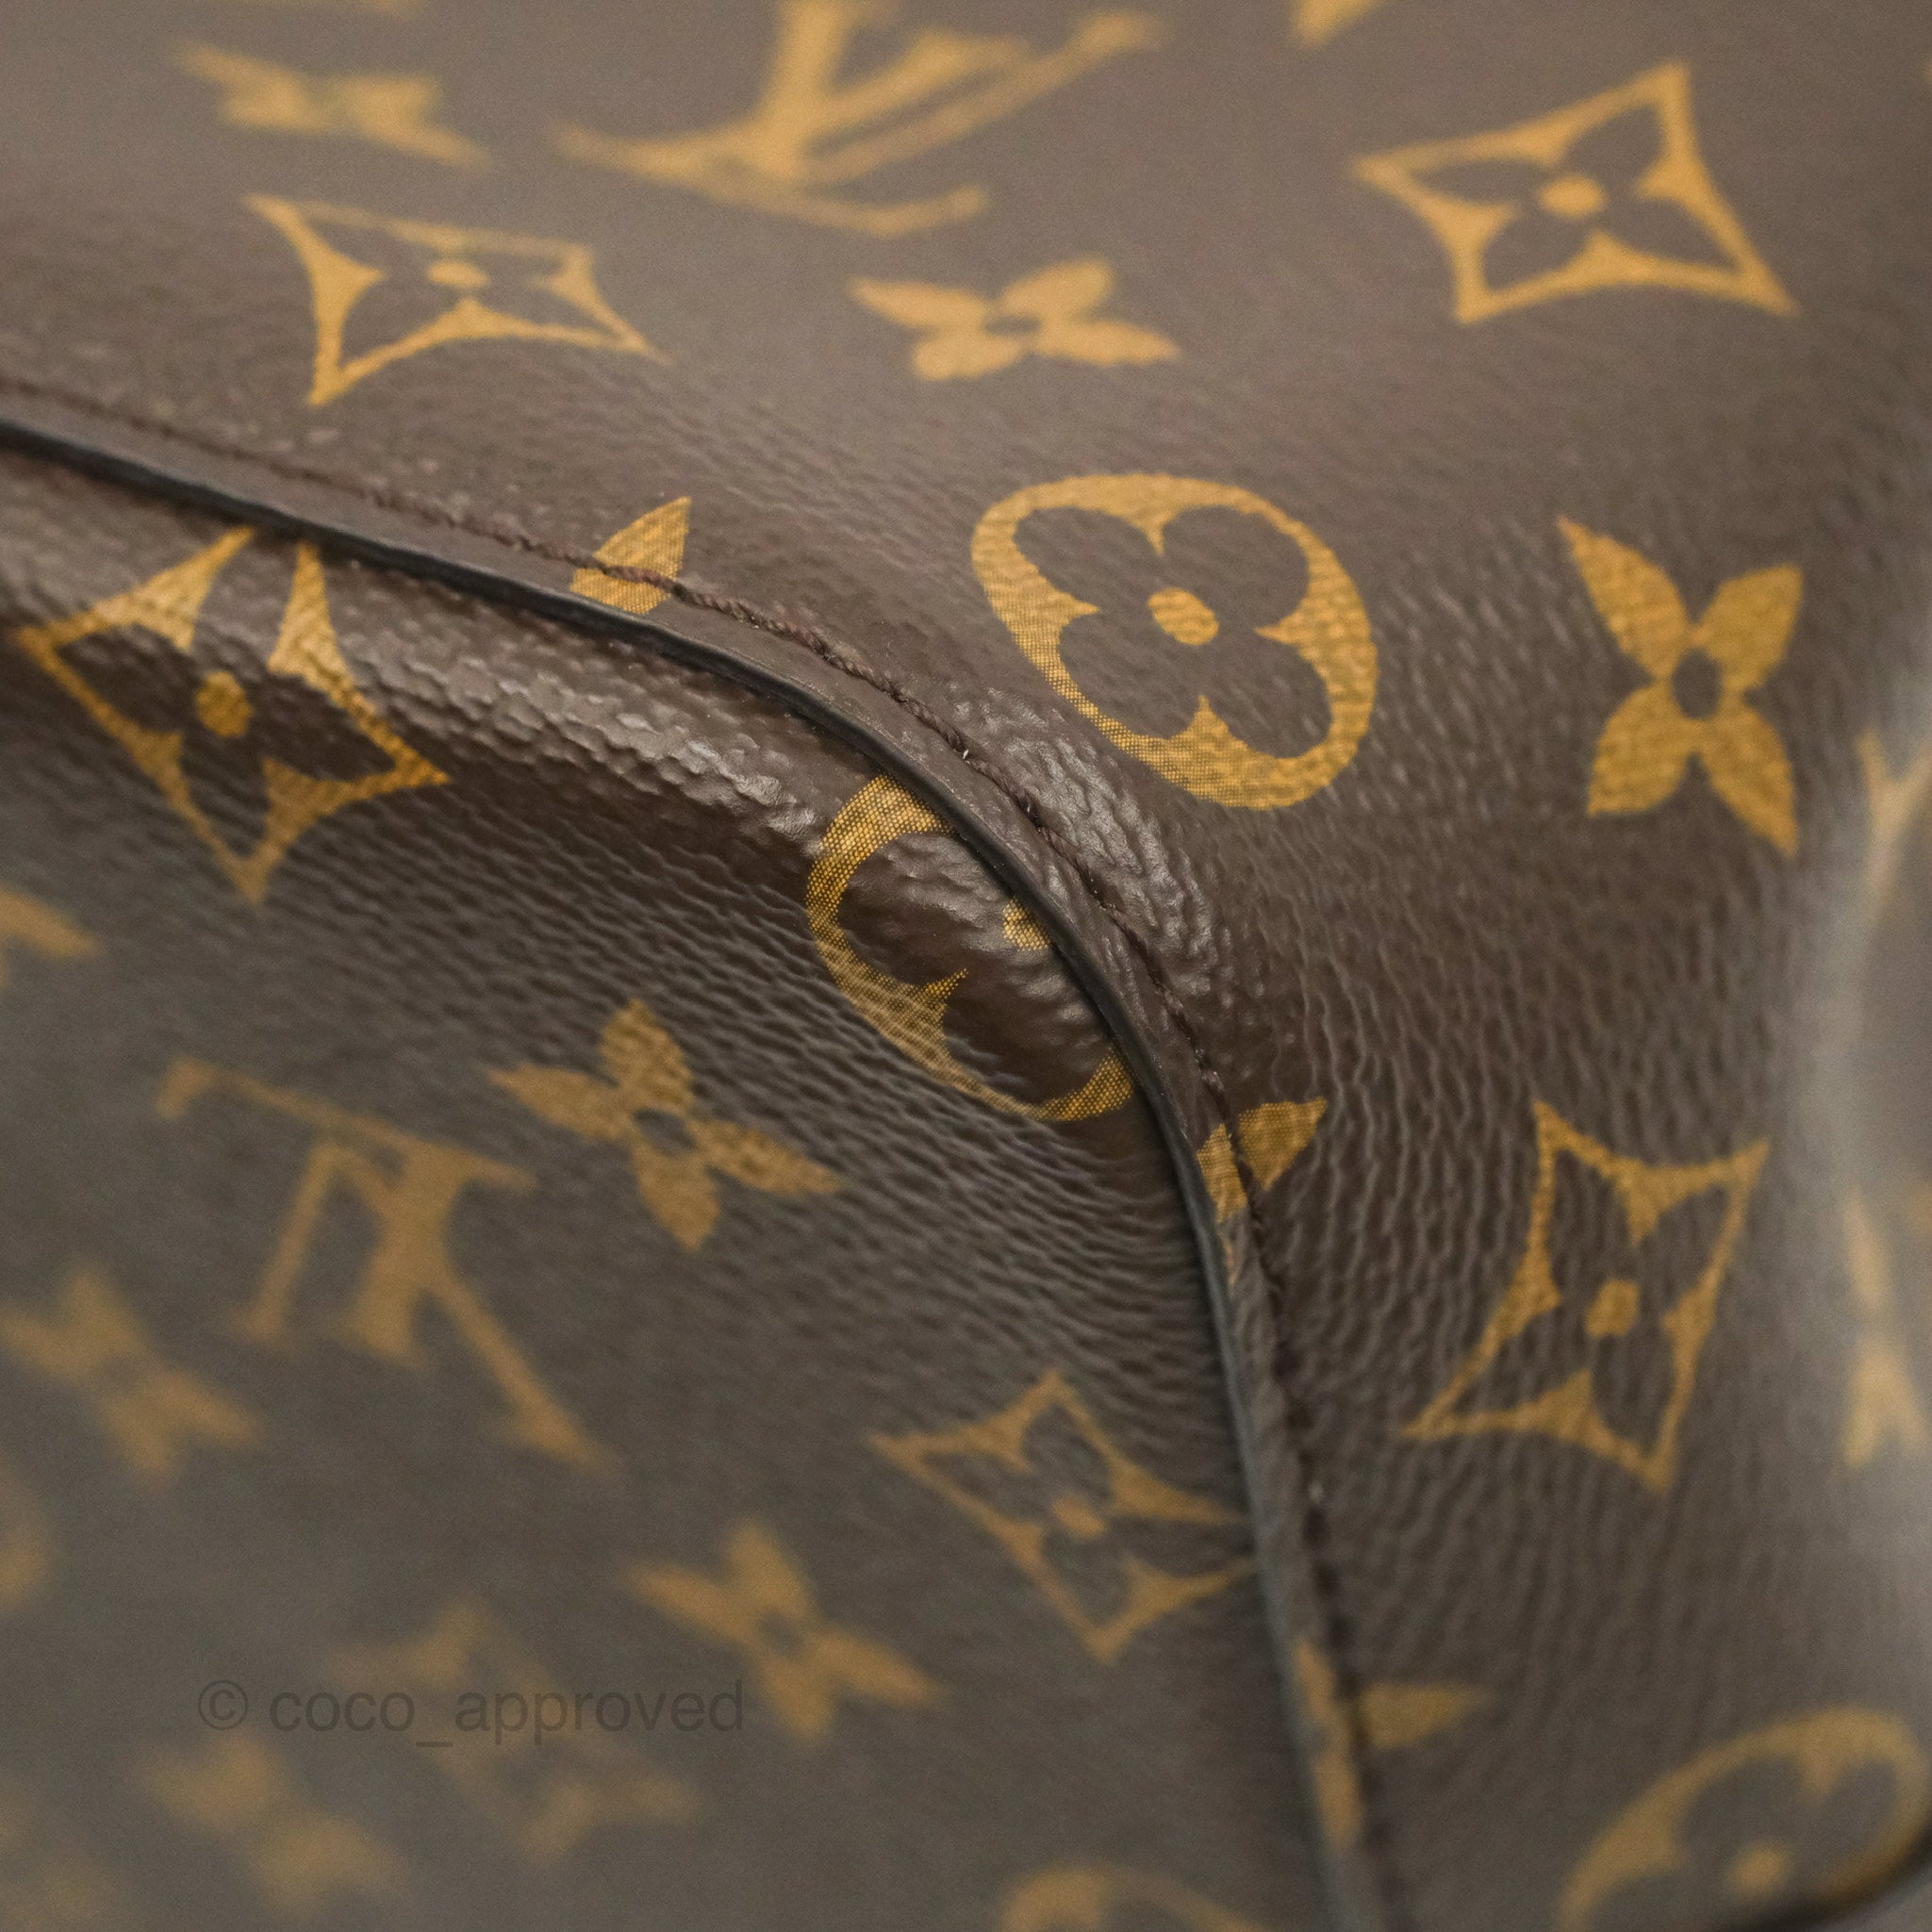 Louis Vuitton Rose Poudre Monogram Neonoe Bag – The Closet